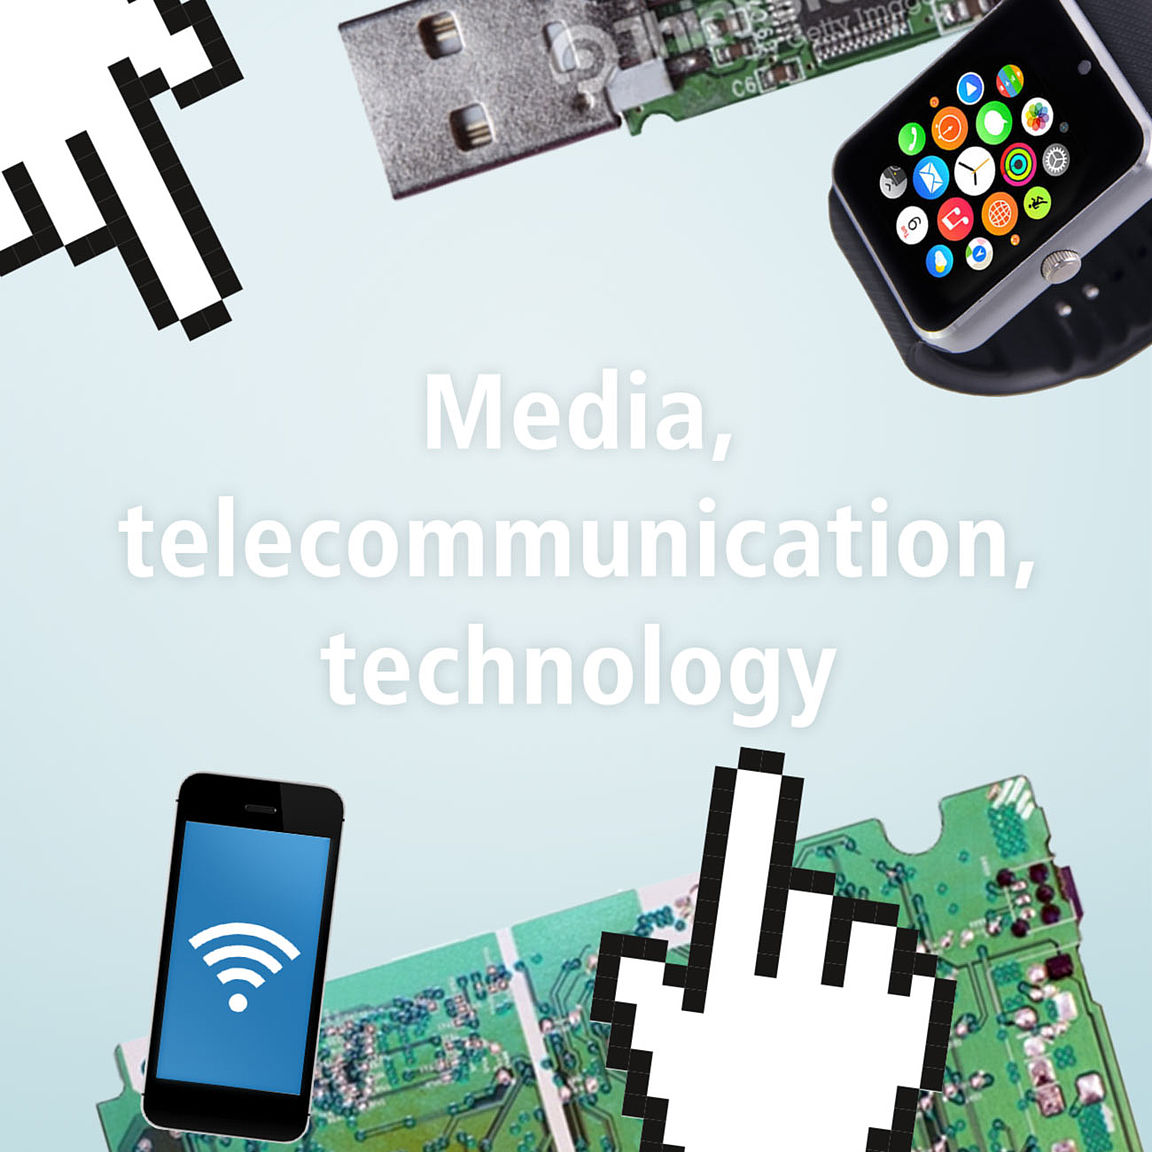 Media, telecommunication, technology